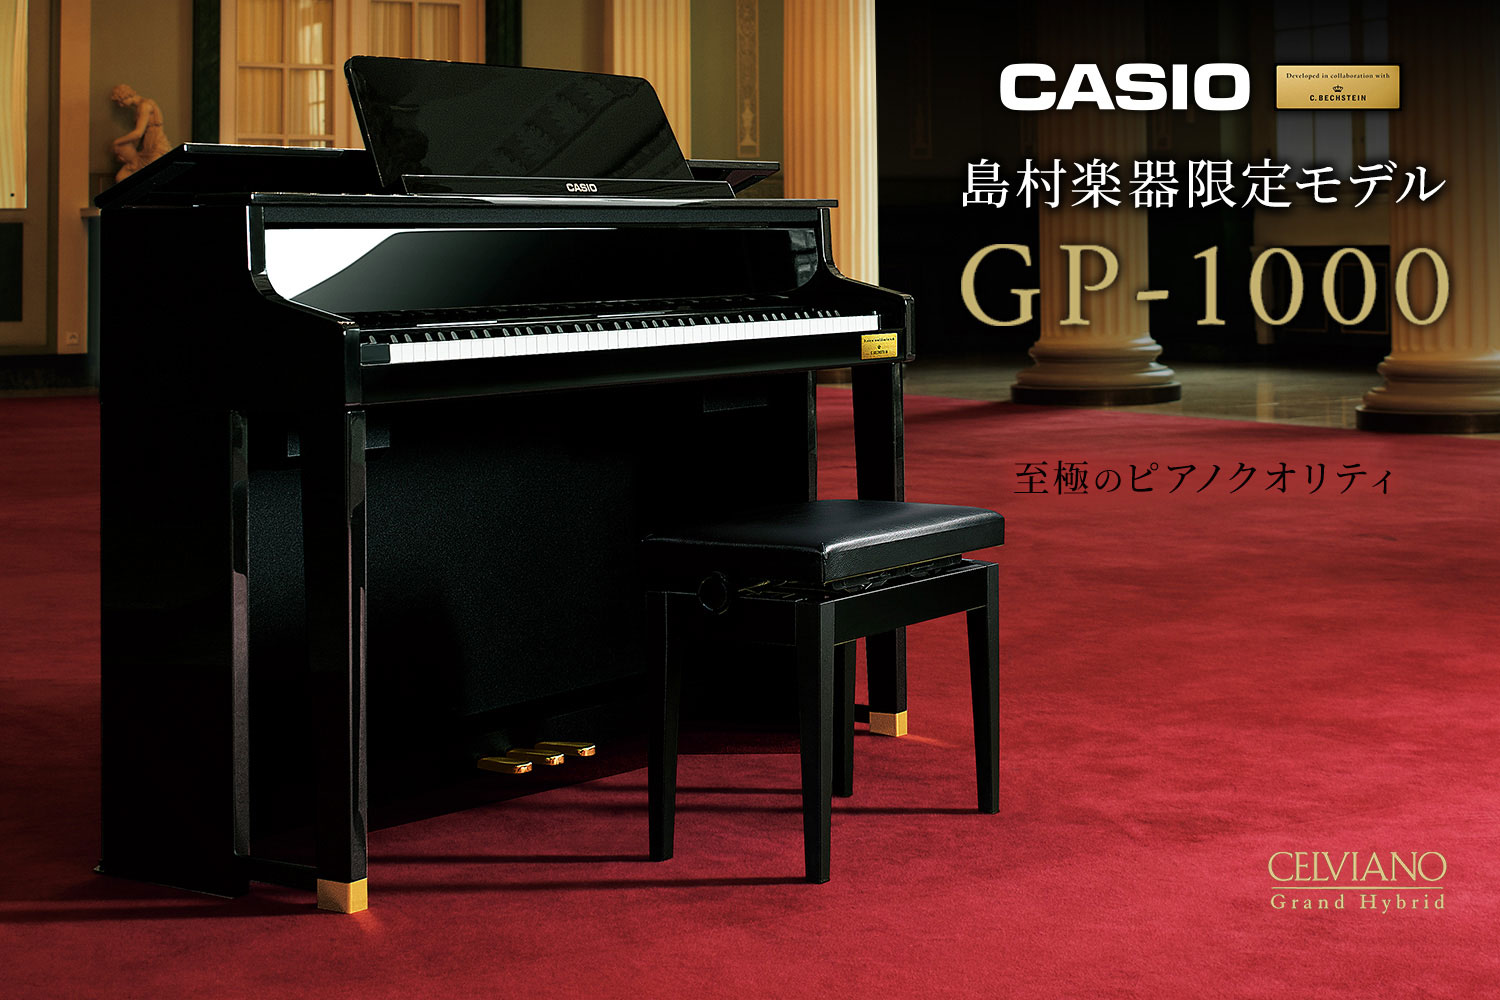 CASIO×C.ベヒシュタイン コラボレーション電子ピアノに島村楽器限定モデル「GP-1000」が新登場！船堀店に入荷しました！